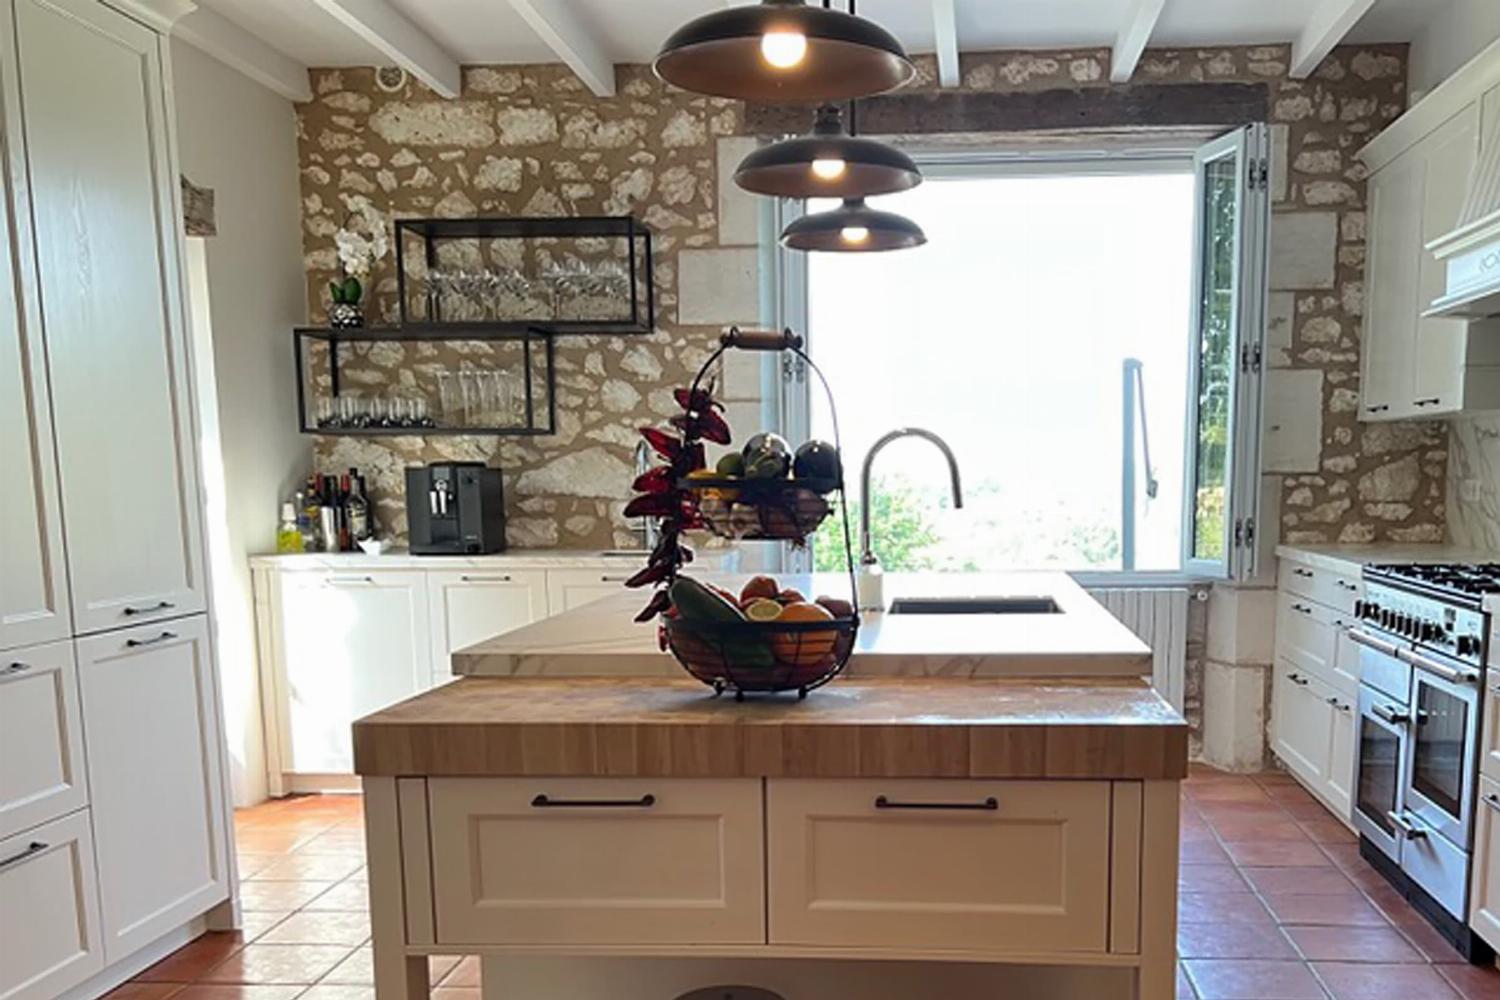 Kitchen | Rental home in Dordogne